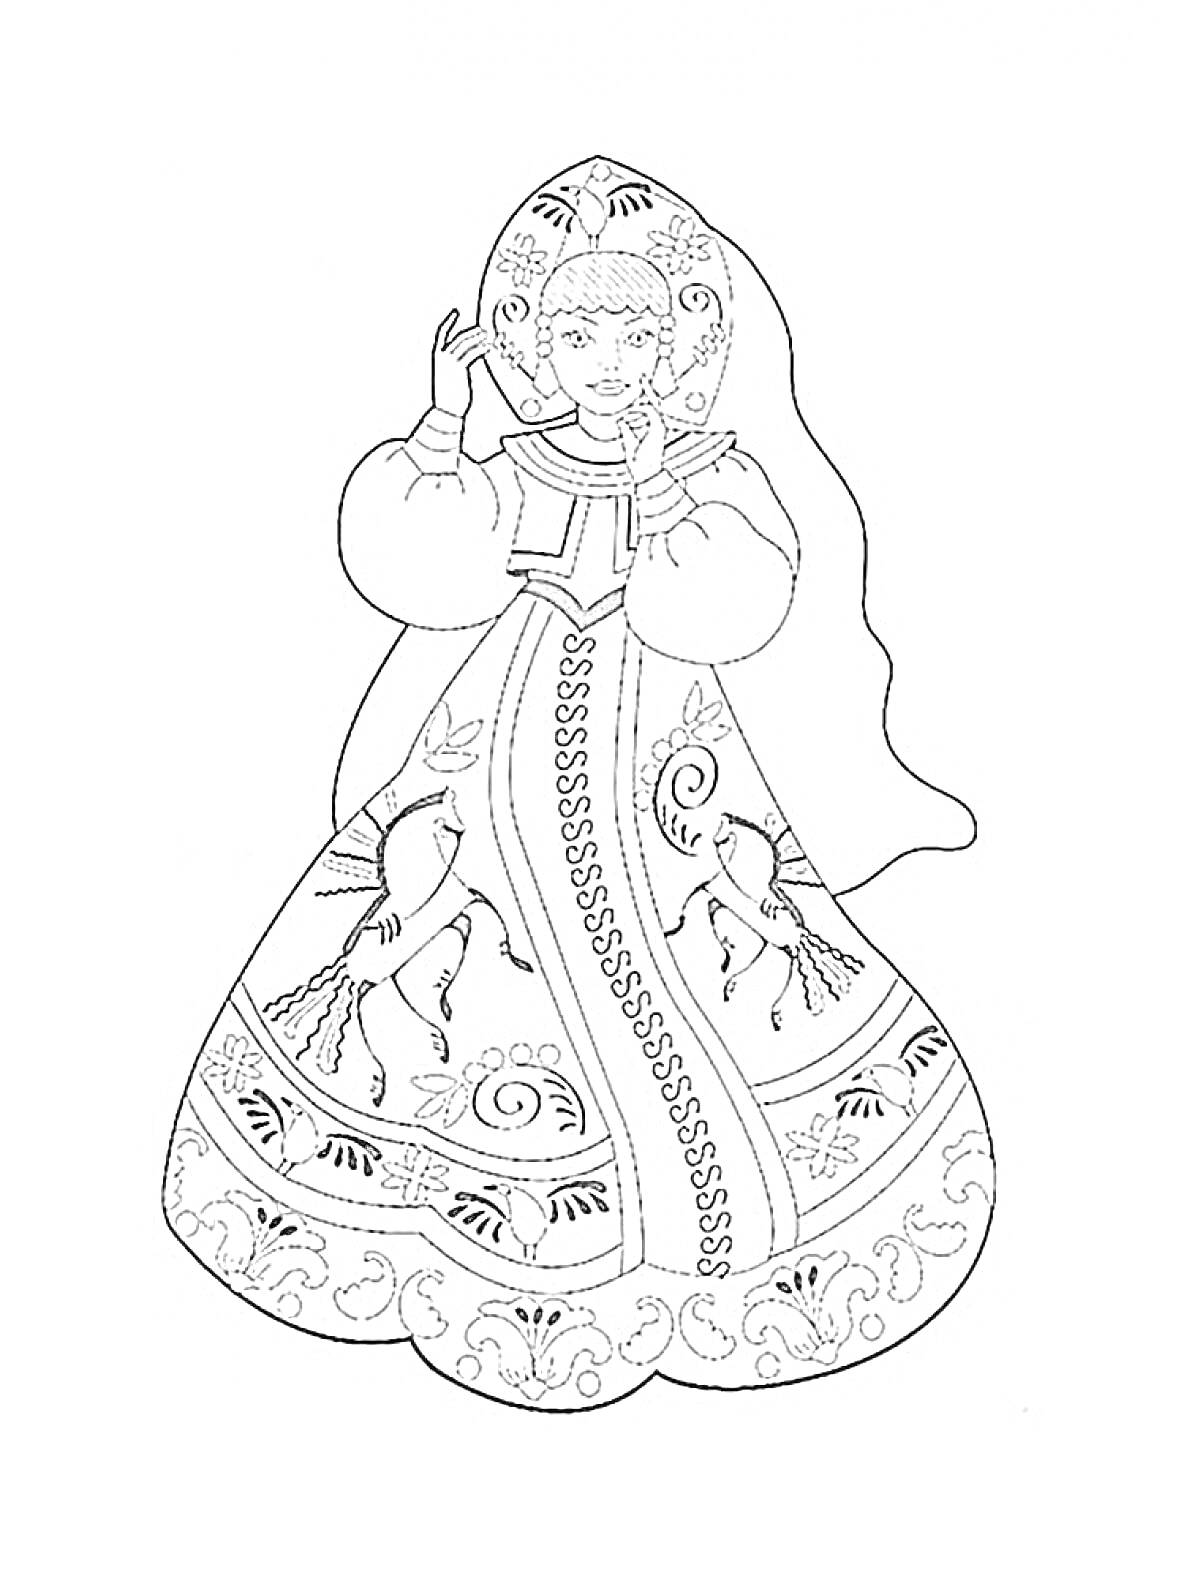 Раскраска Девушка в русском народном костюме с кокошником, платьем с длинными рукавами и орнаментом, изображающим птиц и цветы